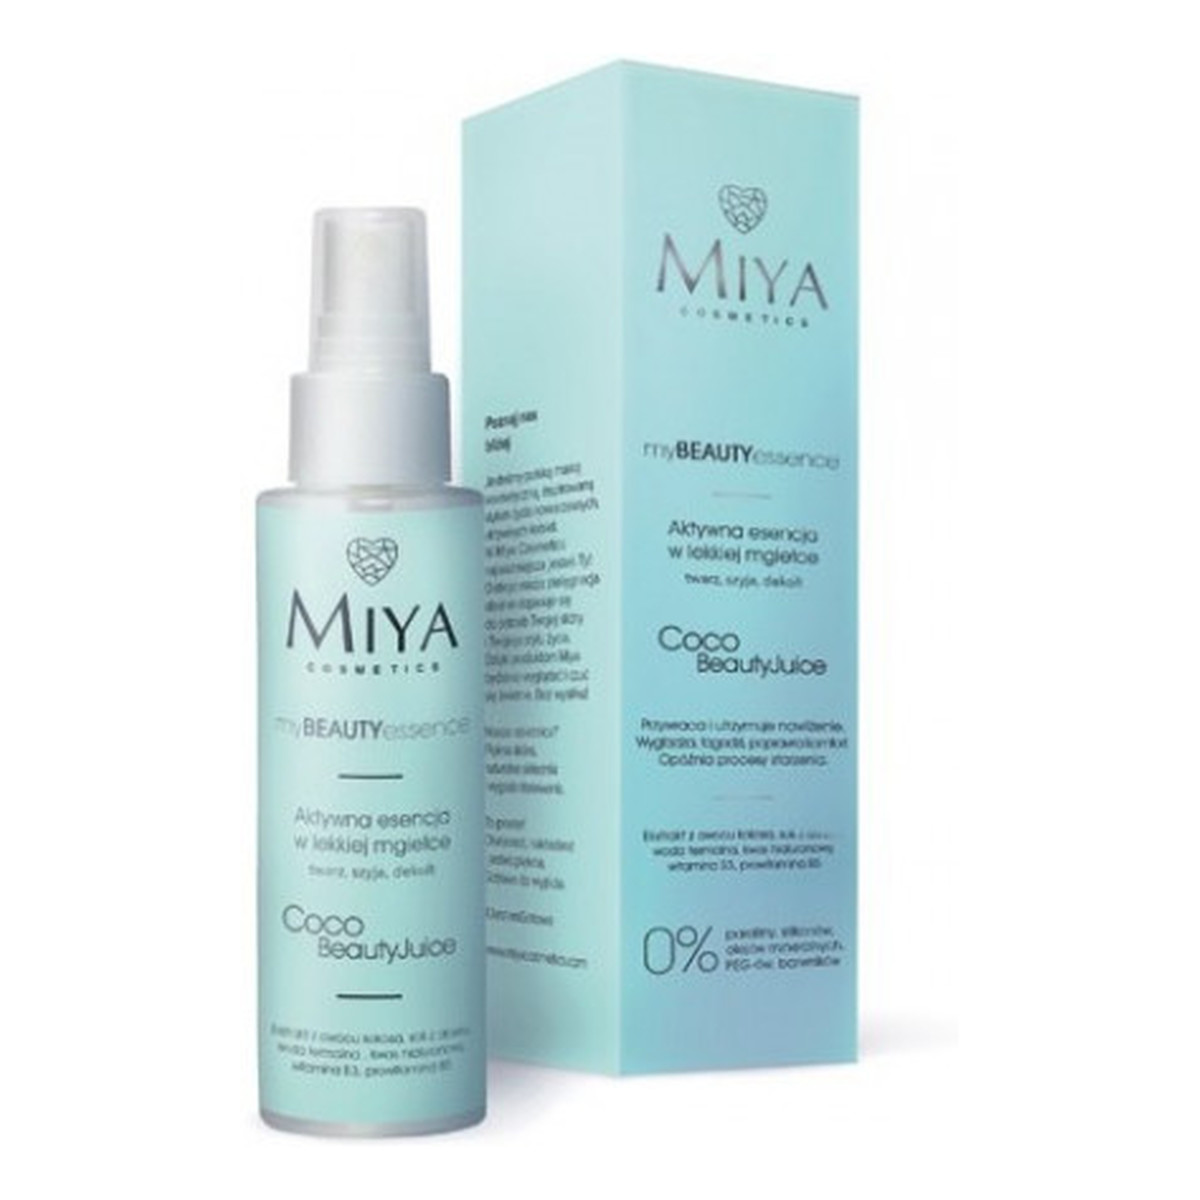 Miya Cosmetics My Beauty Essence Coco Beauty Juice aktywna esencja w lekkiej mgiełce twarz szyja dekolt 100ml